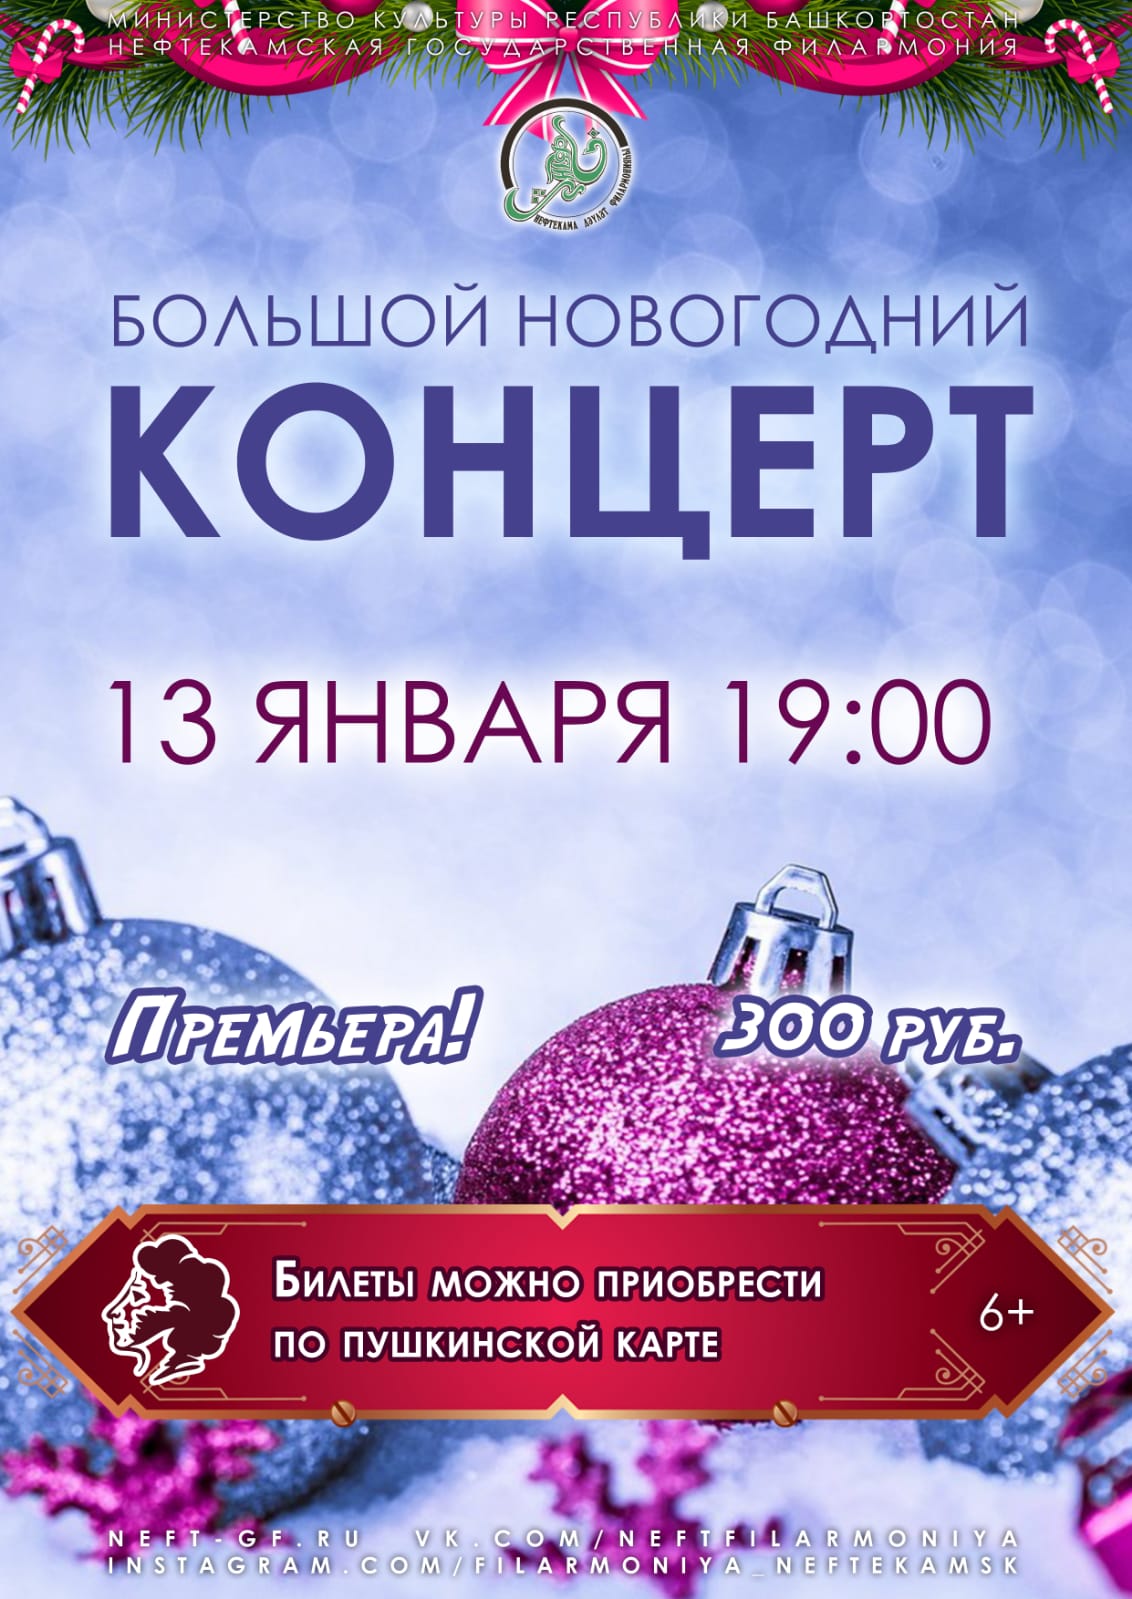 Артисты Нефтекамской государственной филармонии приглашают всех на яркую праздничную программу “БОЛЬШОЙ НОВОГОДНИЙ КОНЦЕРТ”